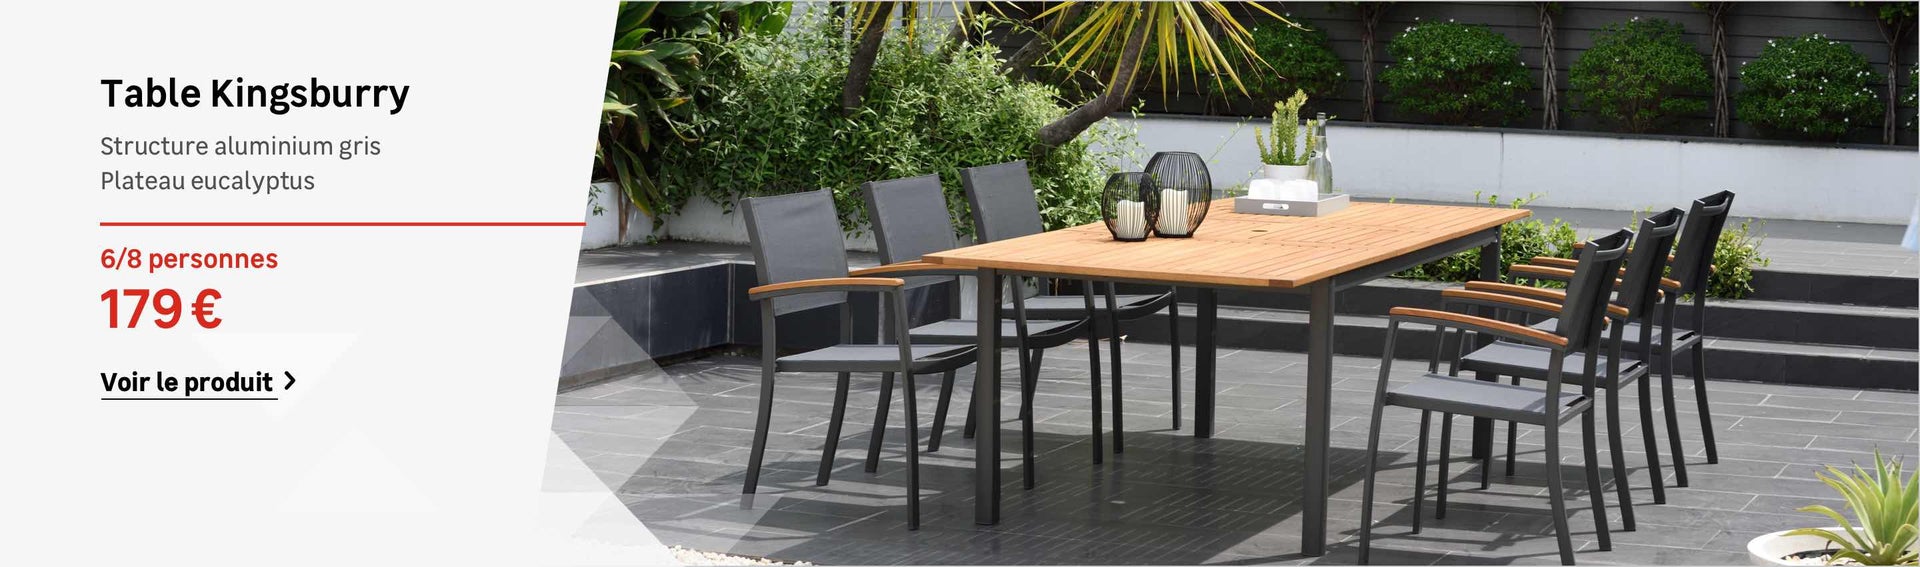 table jardin encastrable genial table et chaise pour terrasse pas cher de table jardin encastrable